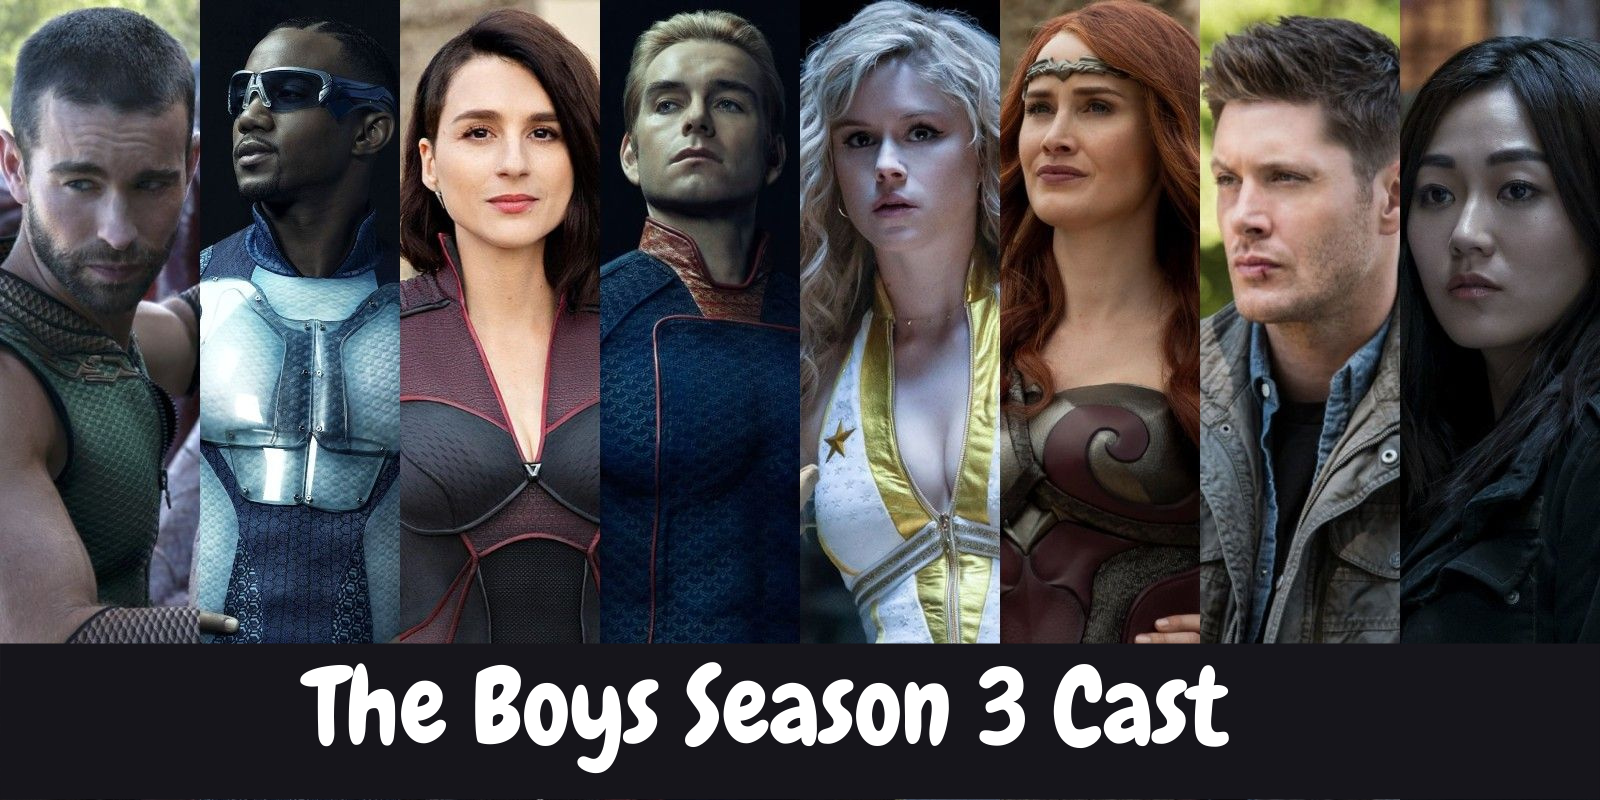 The Boys Season 3 Cast